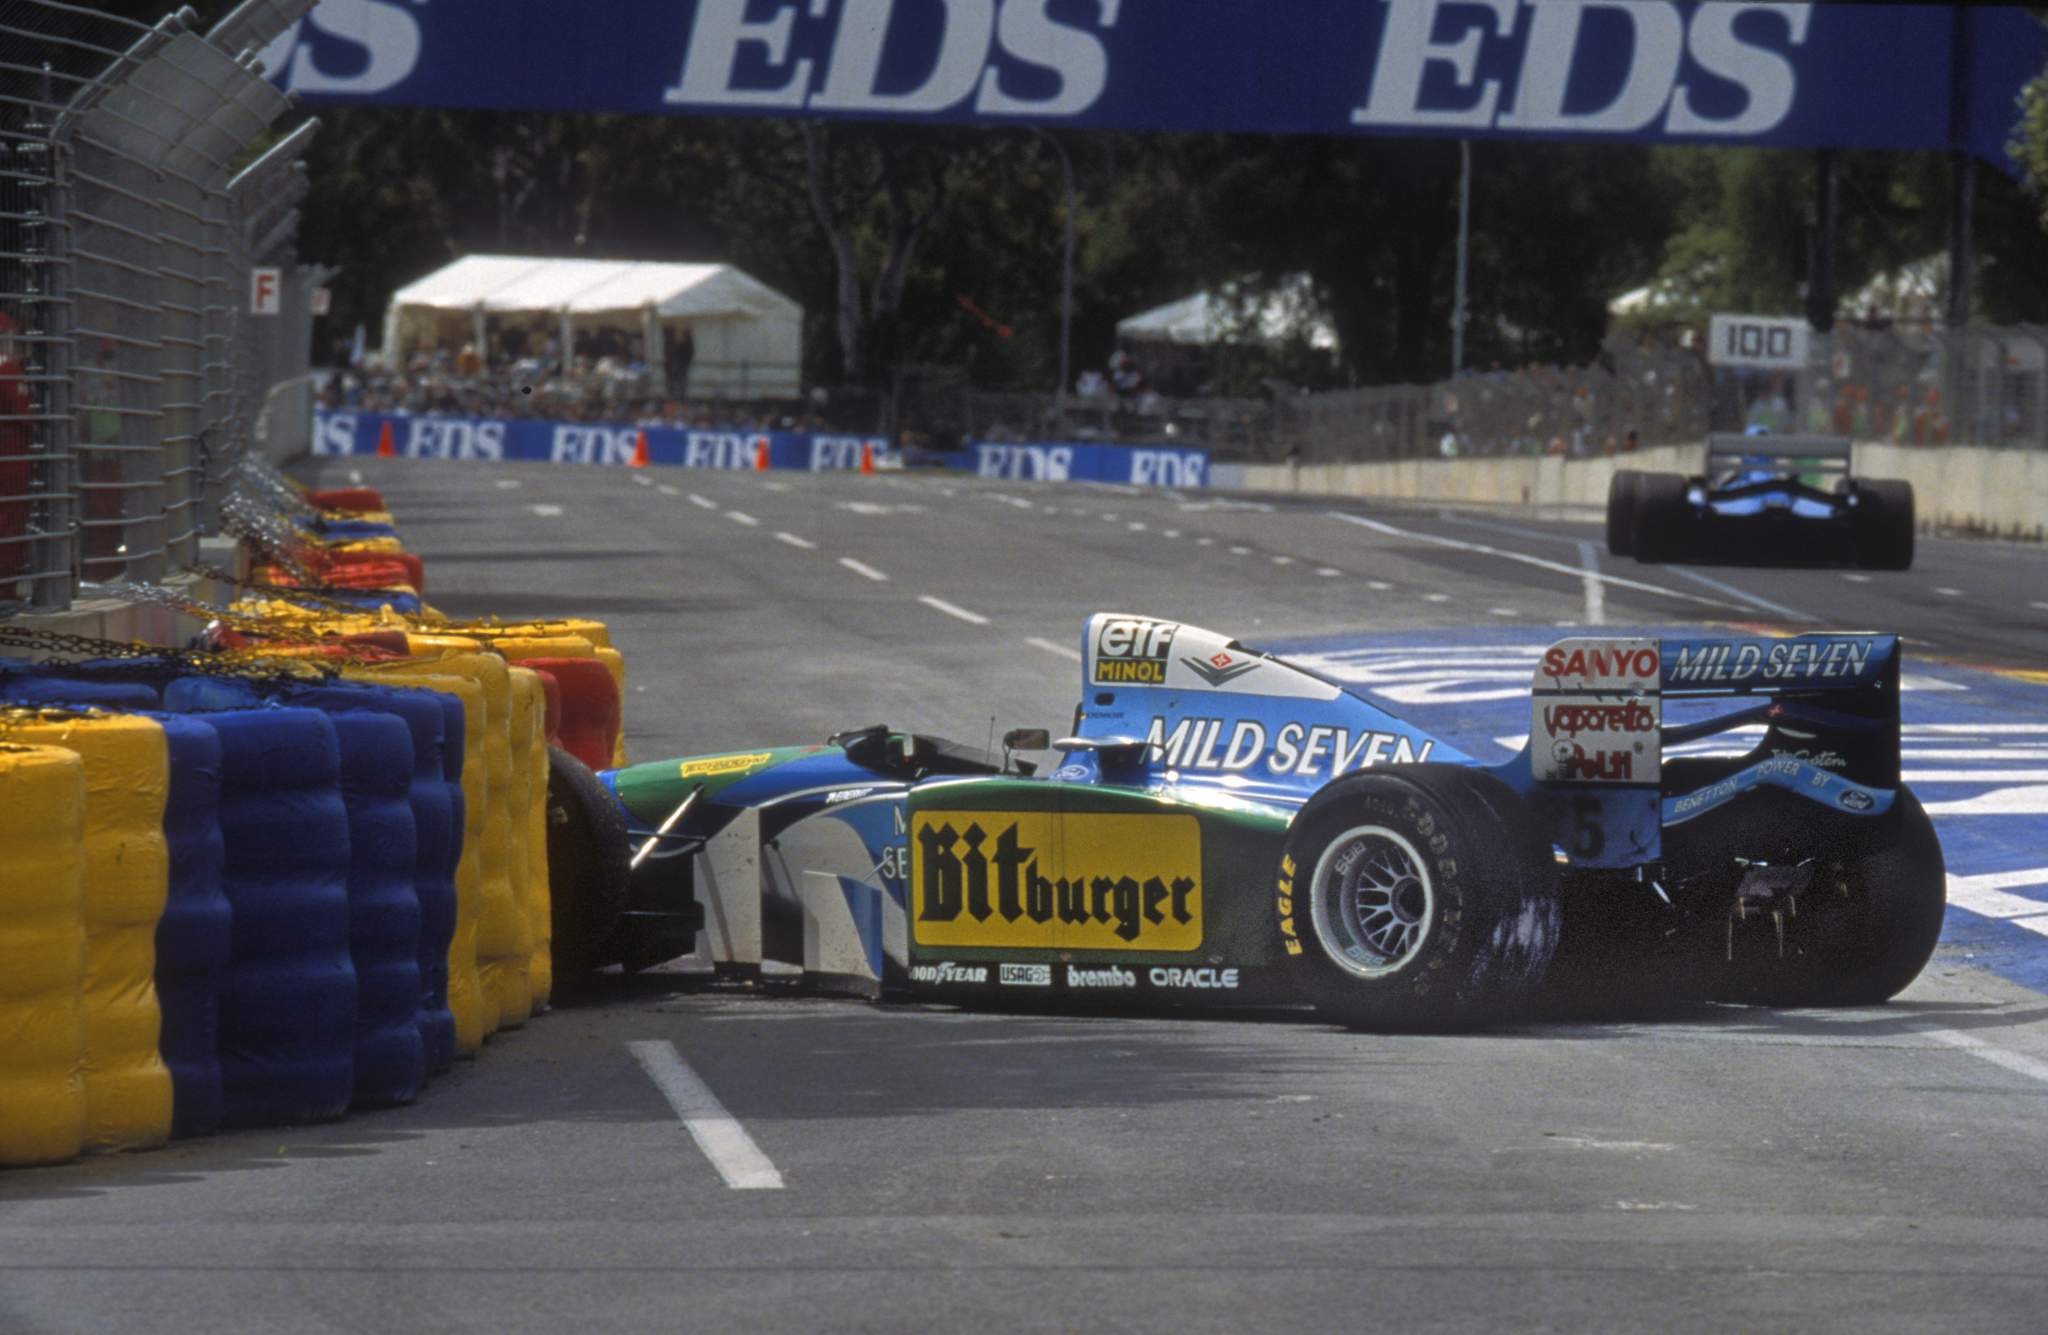 Benetton's accident.